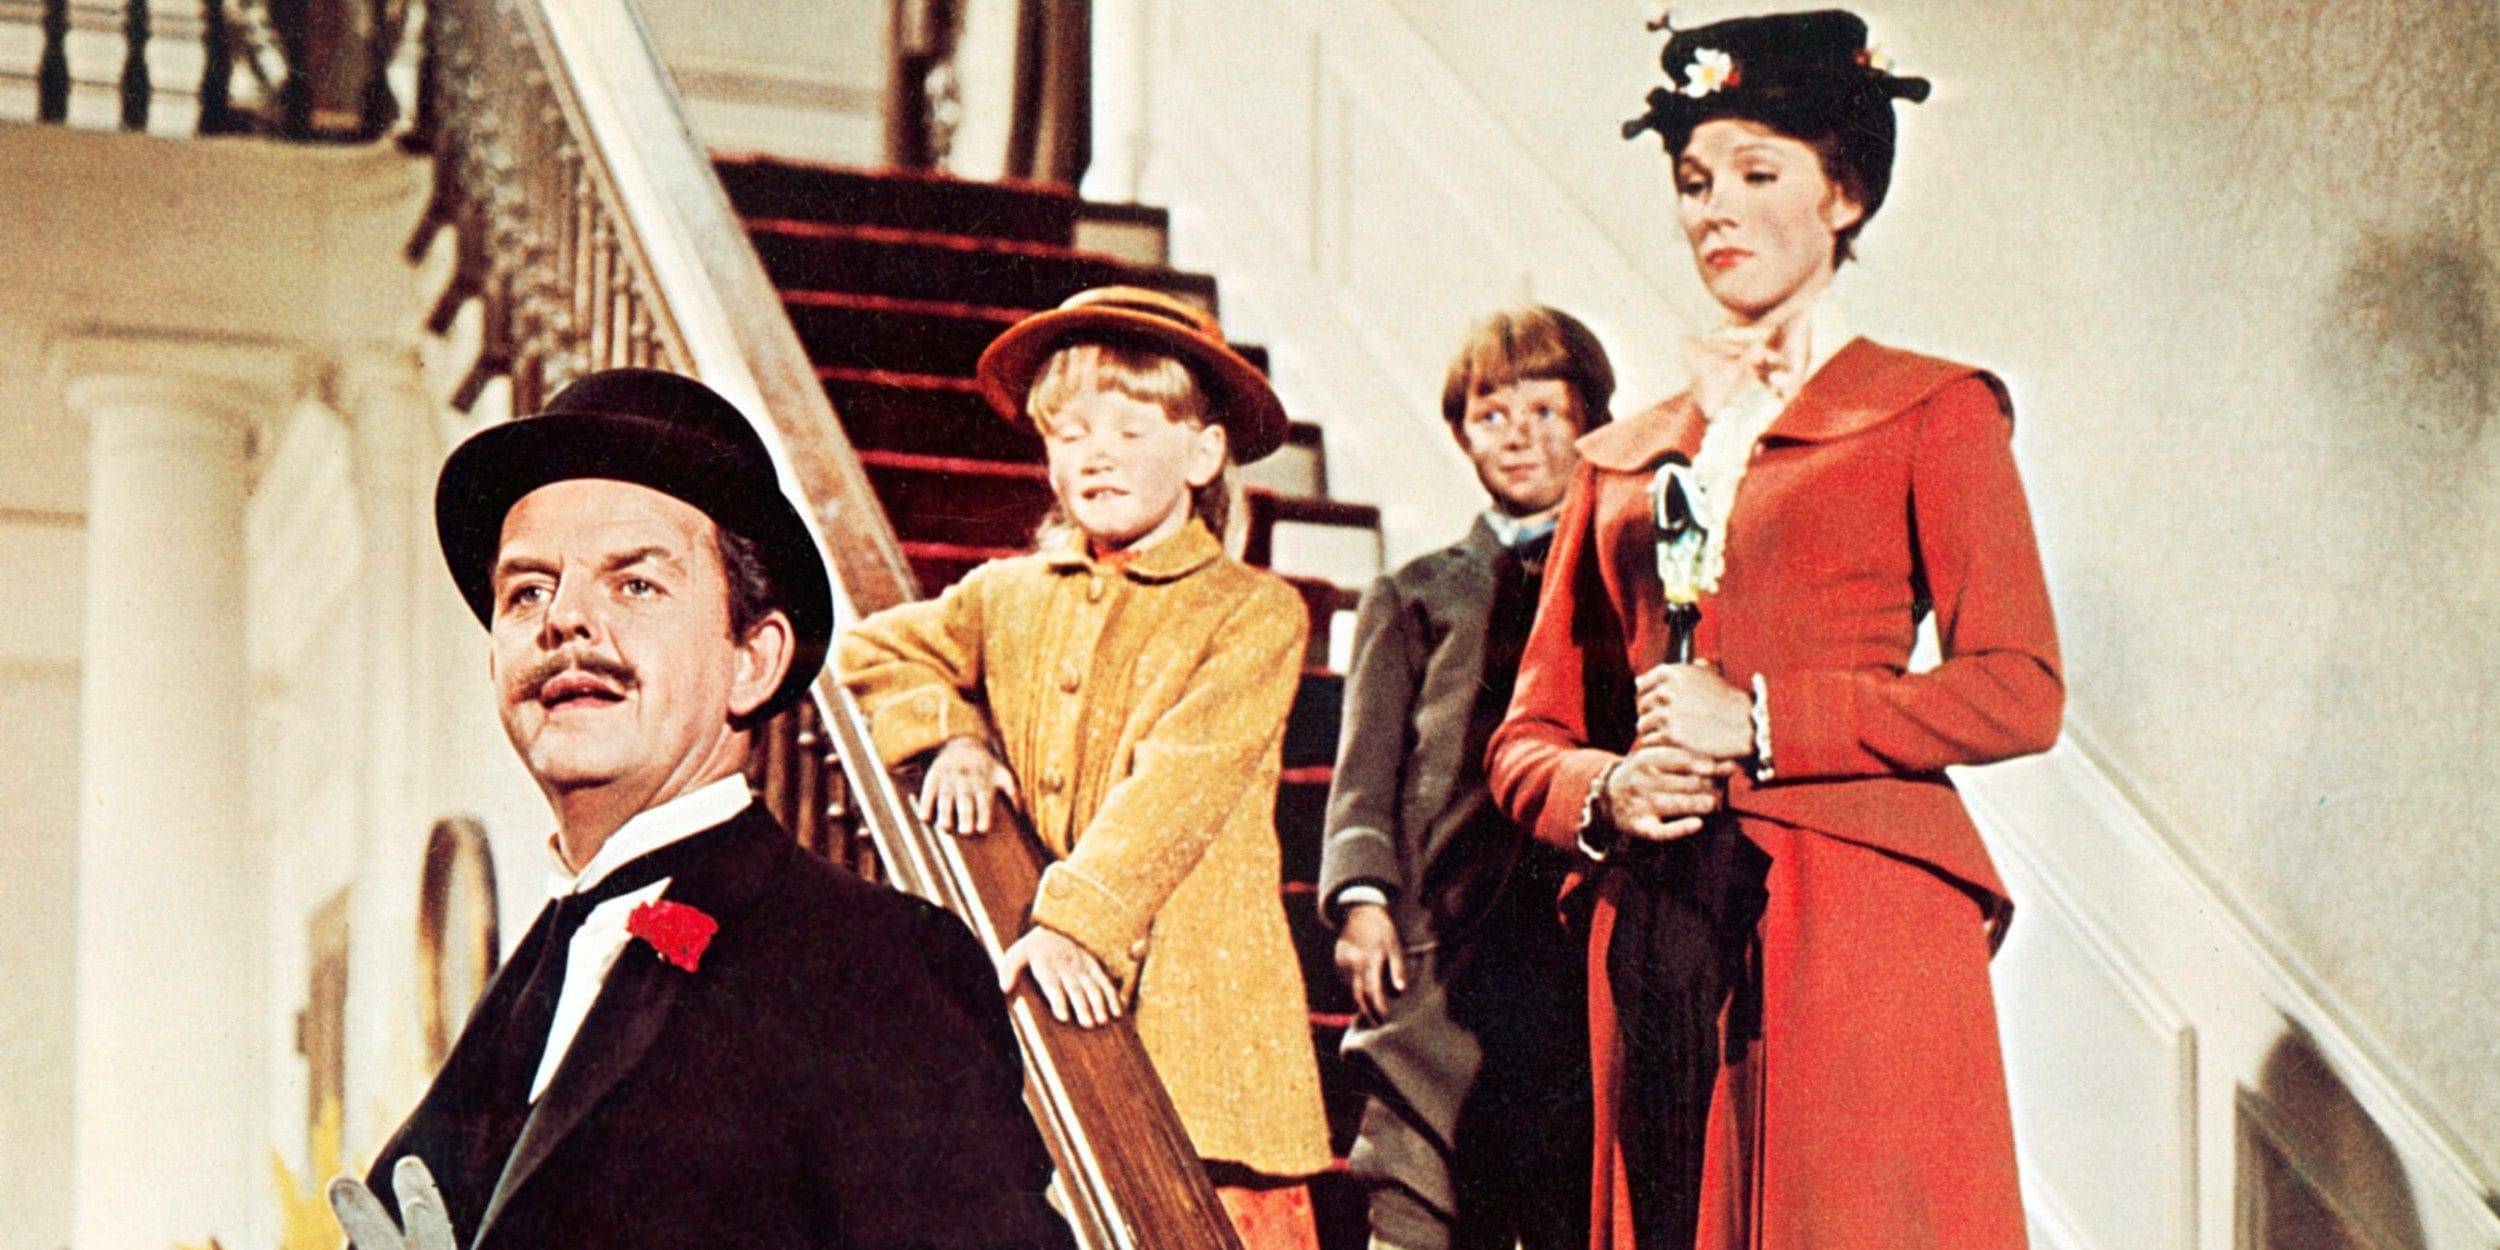 Mary Poppins (Julie Andrews) mit Mr. Banks und den Kindern in "Mary Poppins"